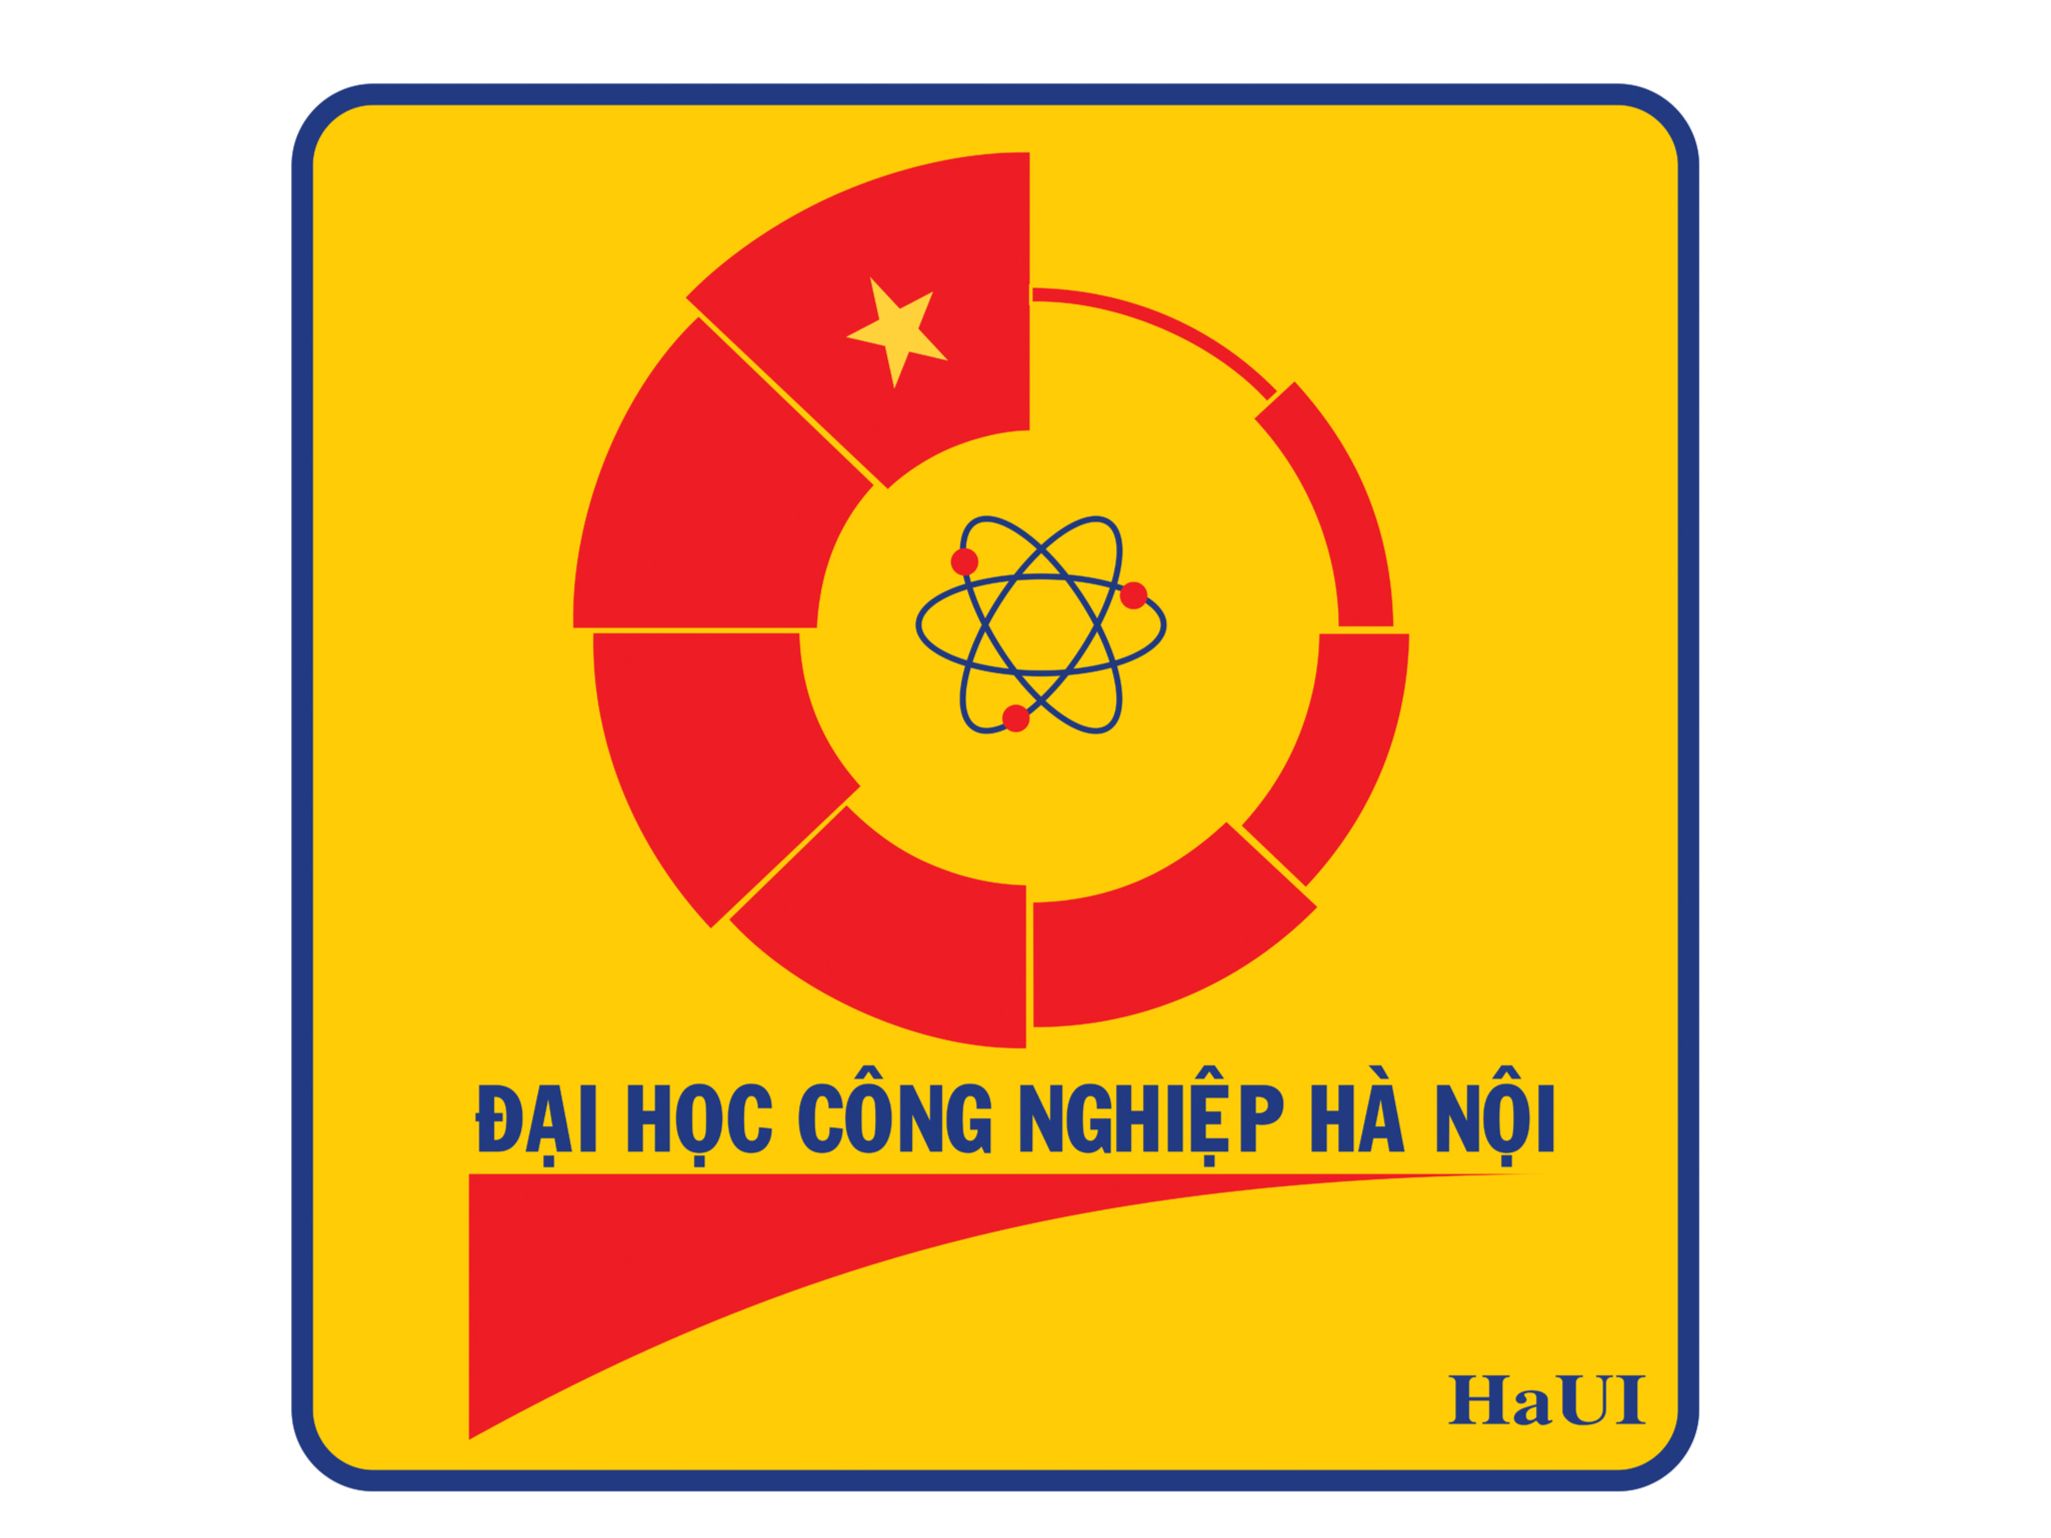 Nhận diện thương hiệu Logo HaUI